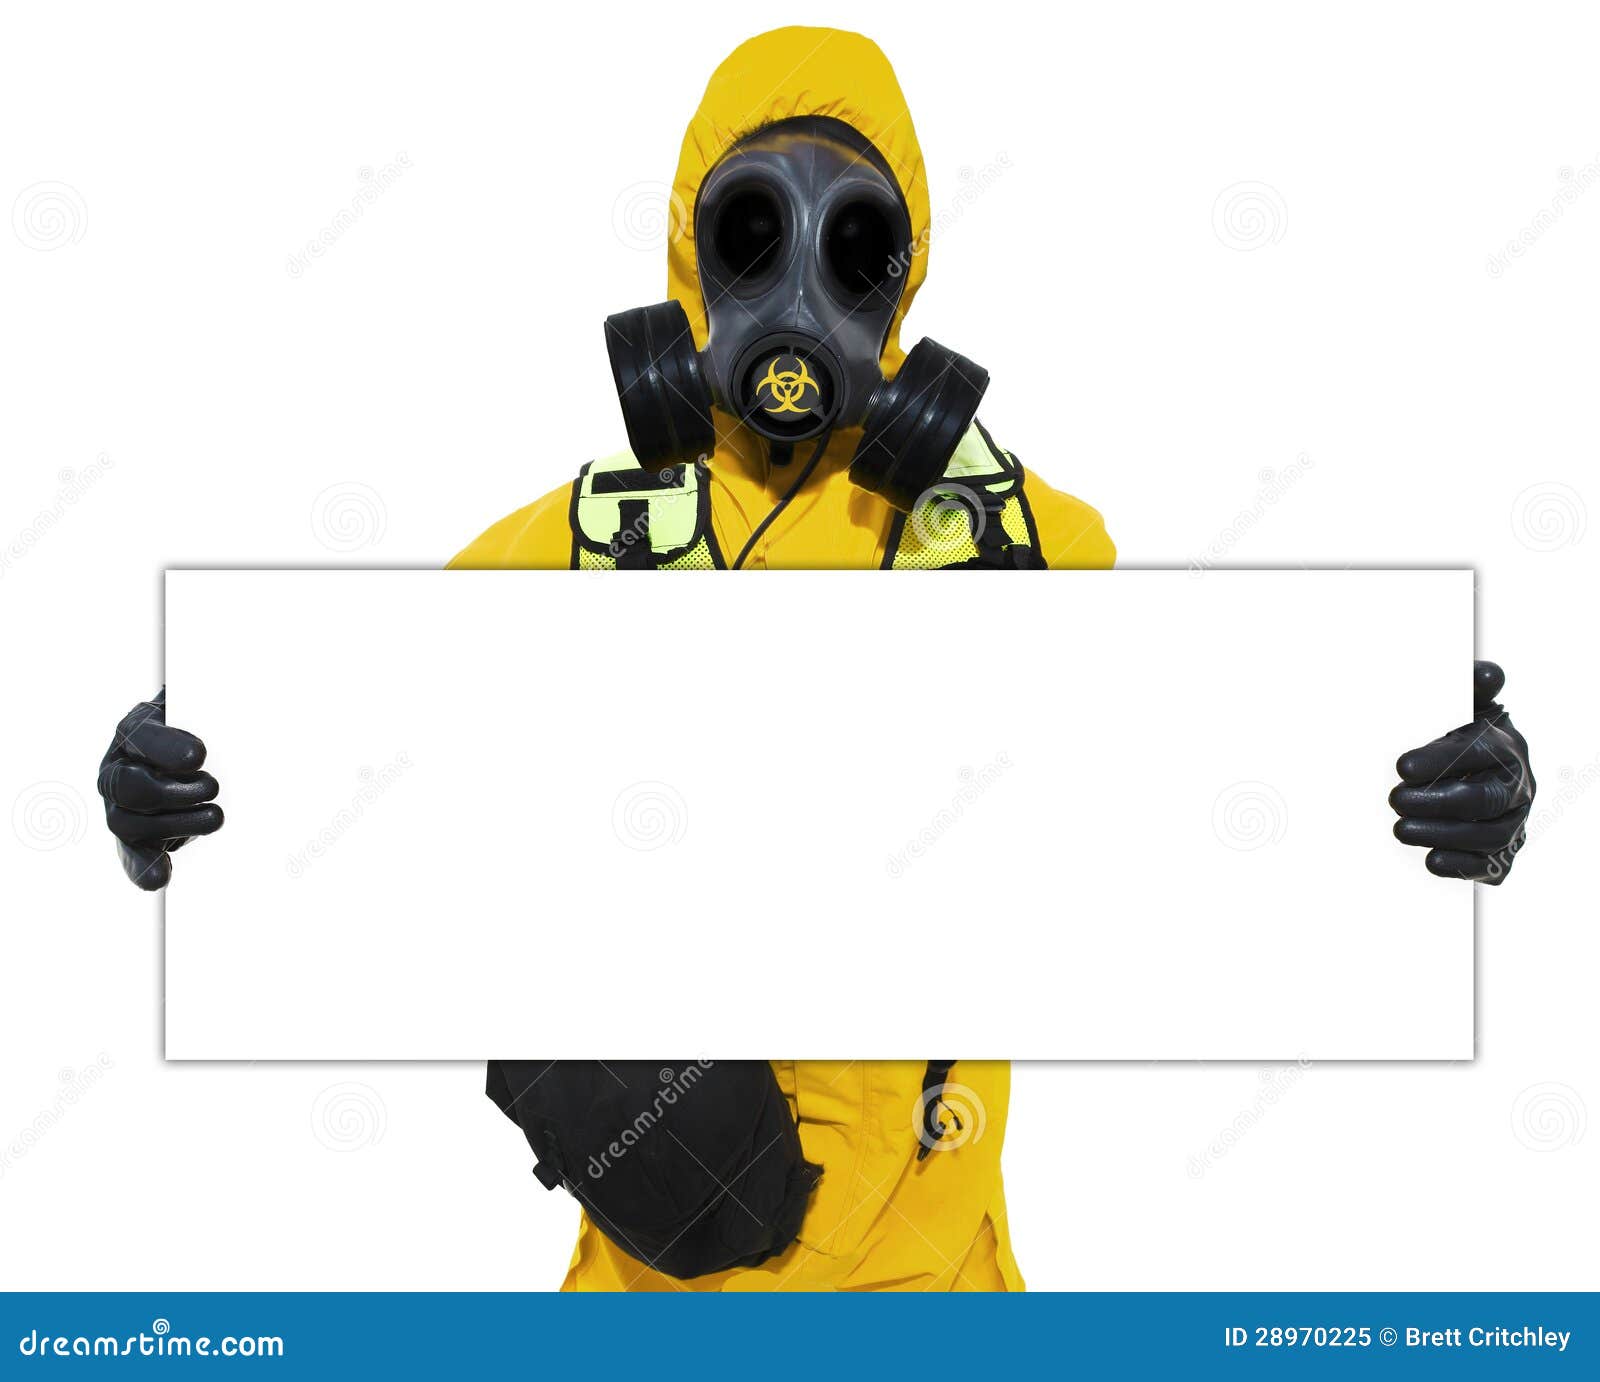 person holding bio hazard sign